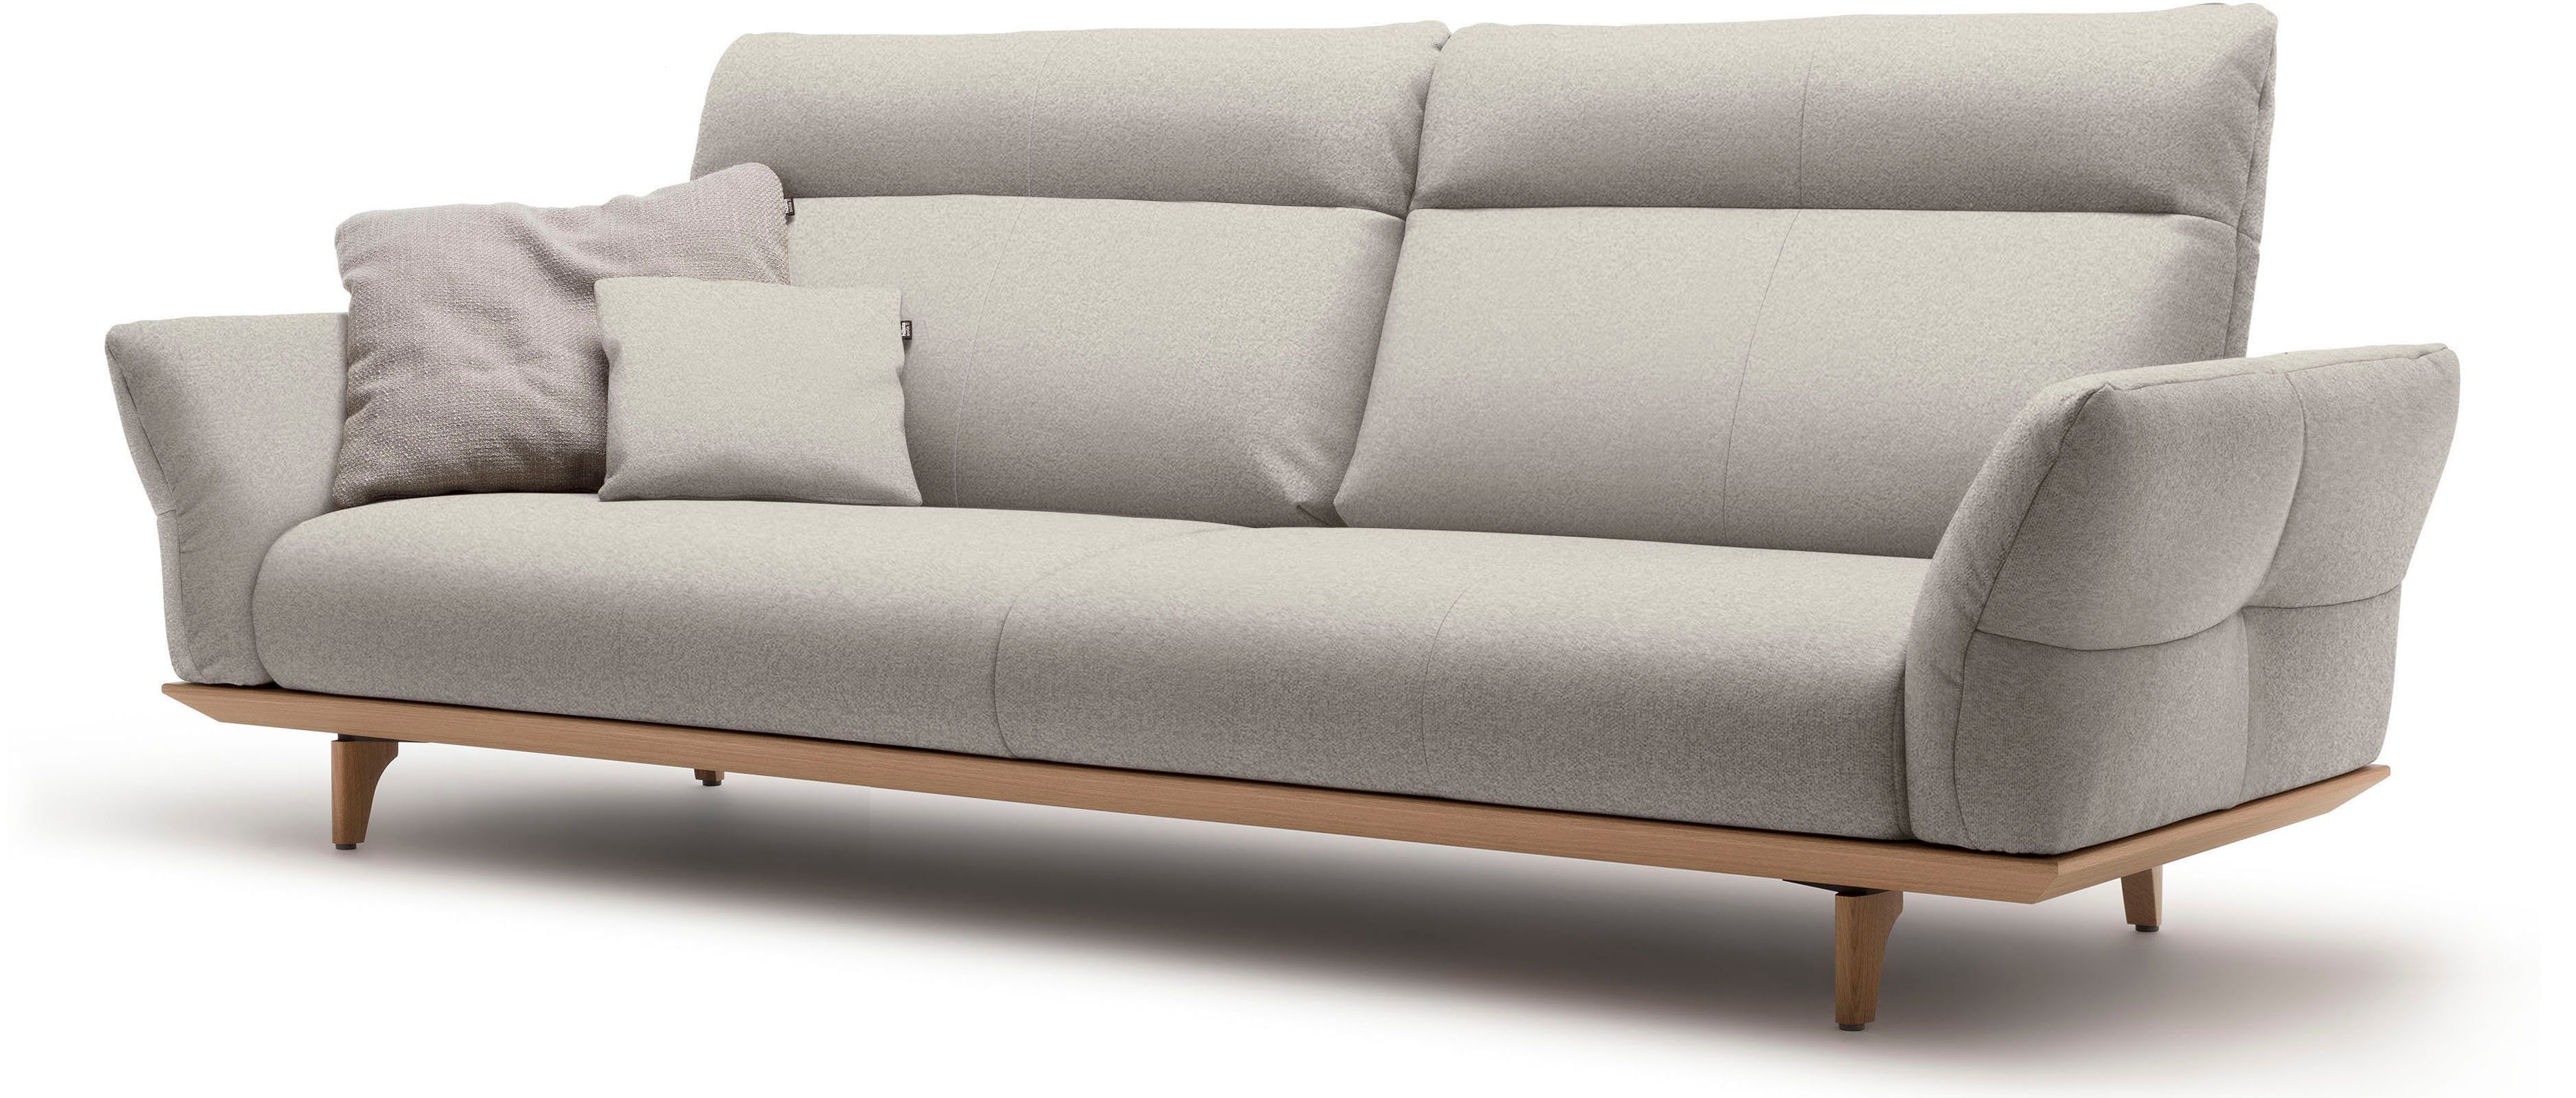 hülsta sofa hs.460, Eiche, Sockel natur, Breite in 4-Sitzer Eiche 248 cm Füße